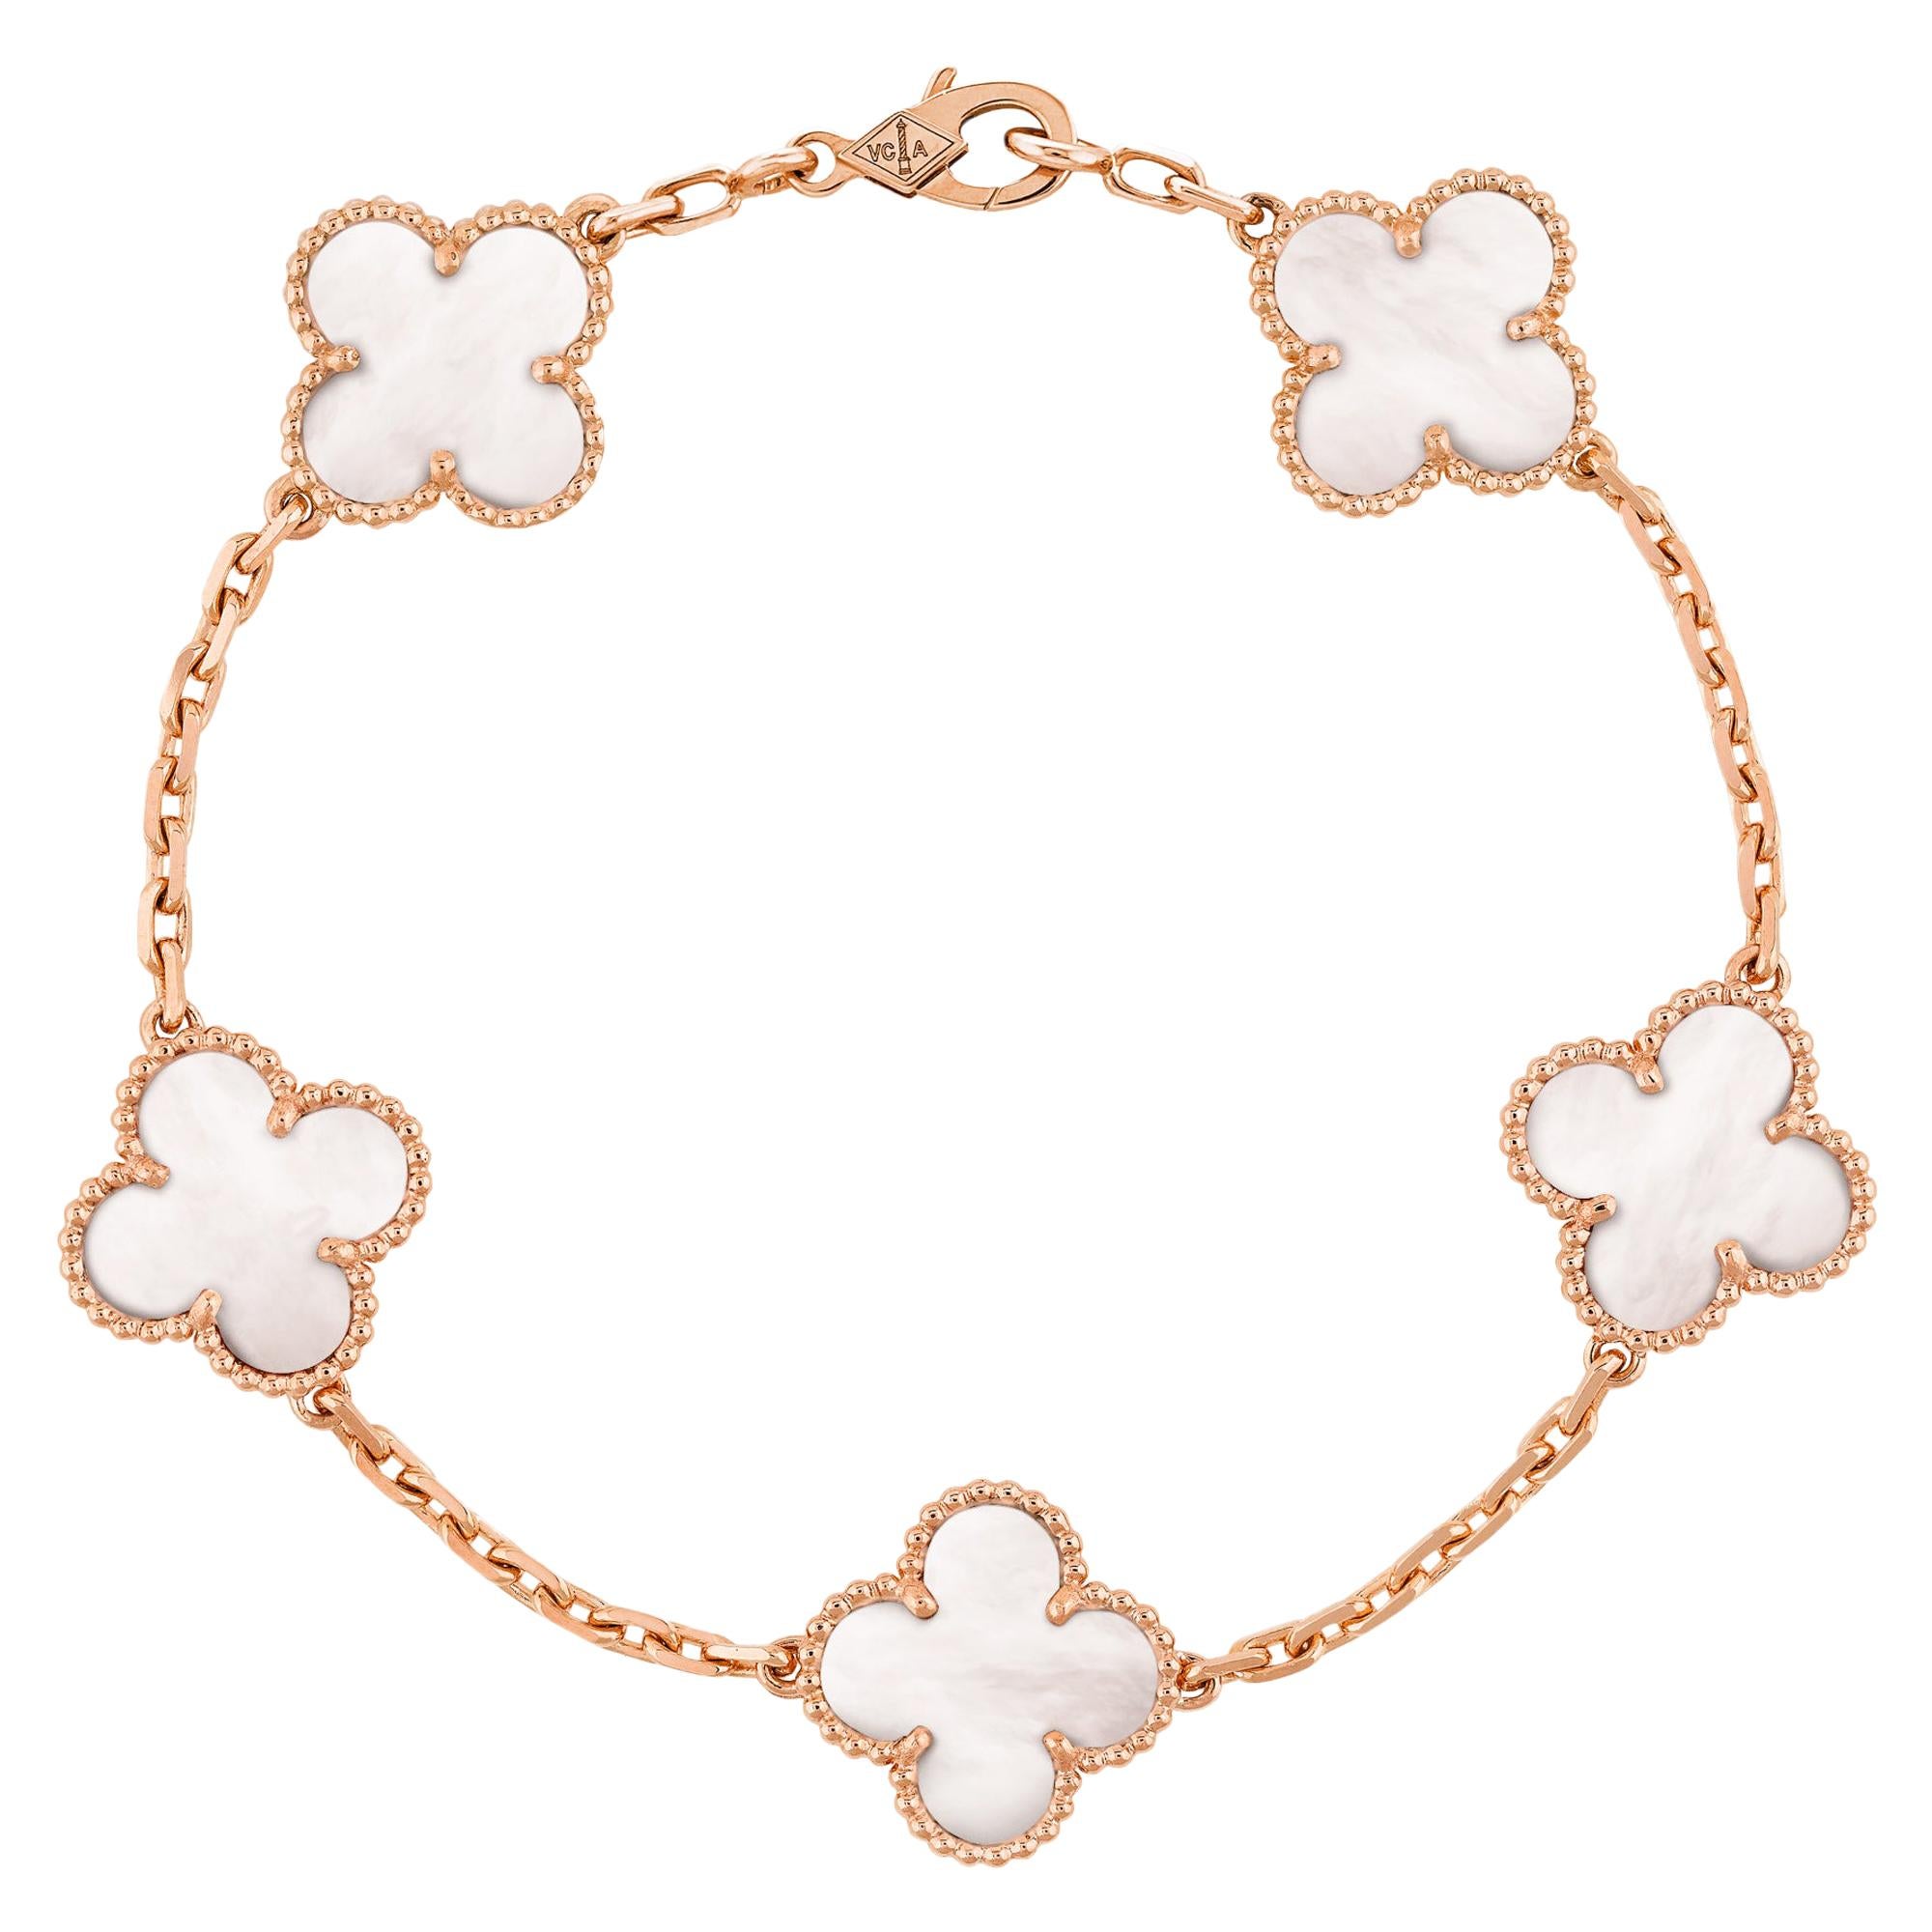 Vintage Alhambra Van Cleef & Arpels Bracelet 5 Motifs Mother of Pearl Rose Gold